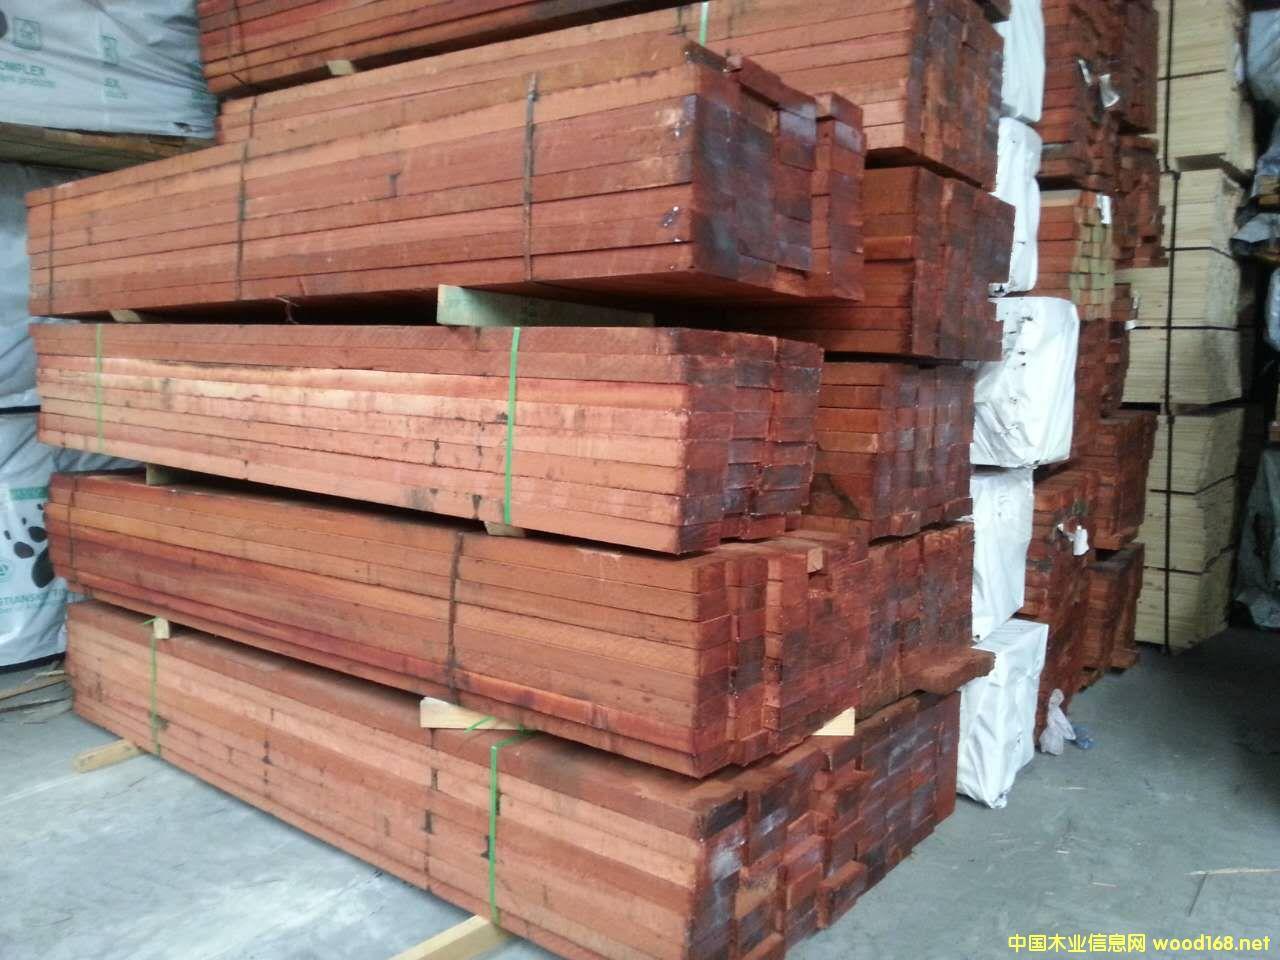 贾拉木是新型防腐木 贾拉木澳洲木材 贾拉木耐腐性强